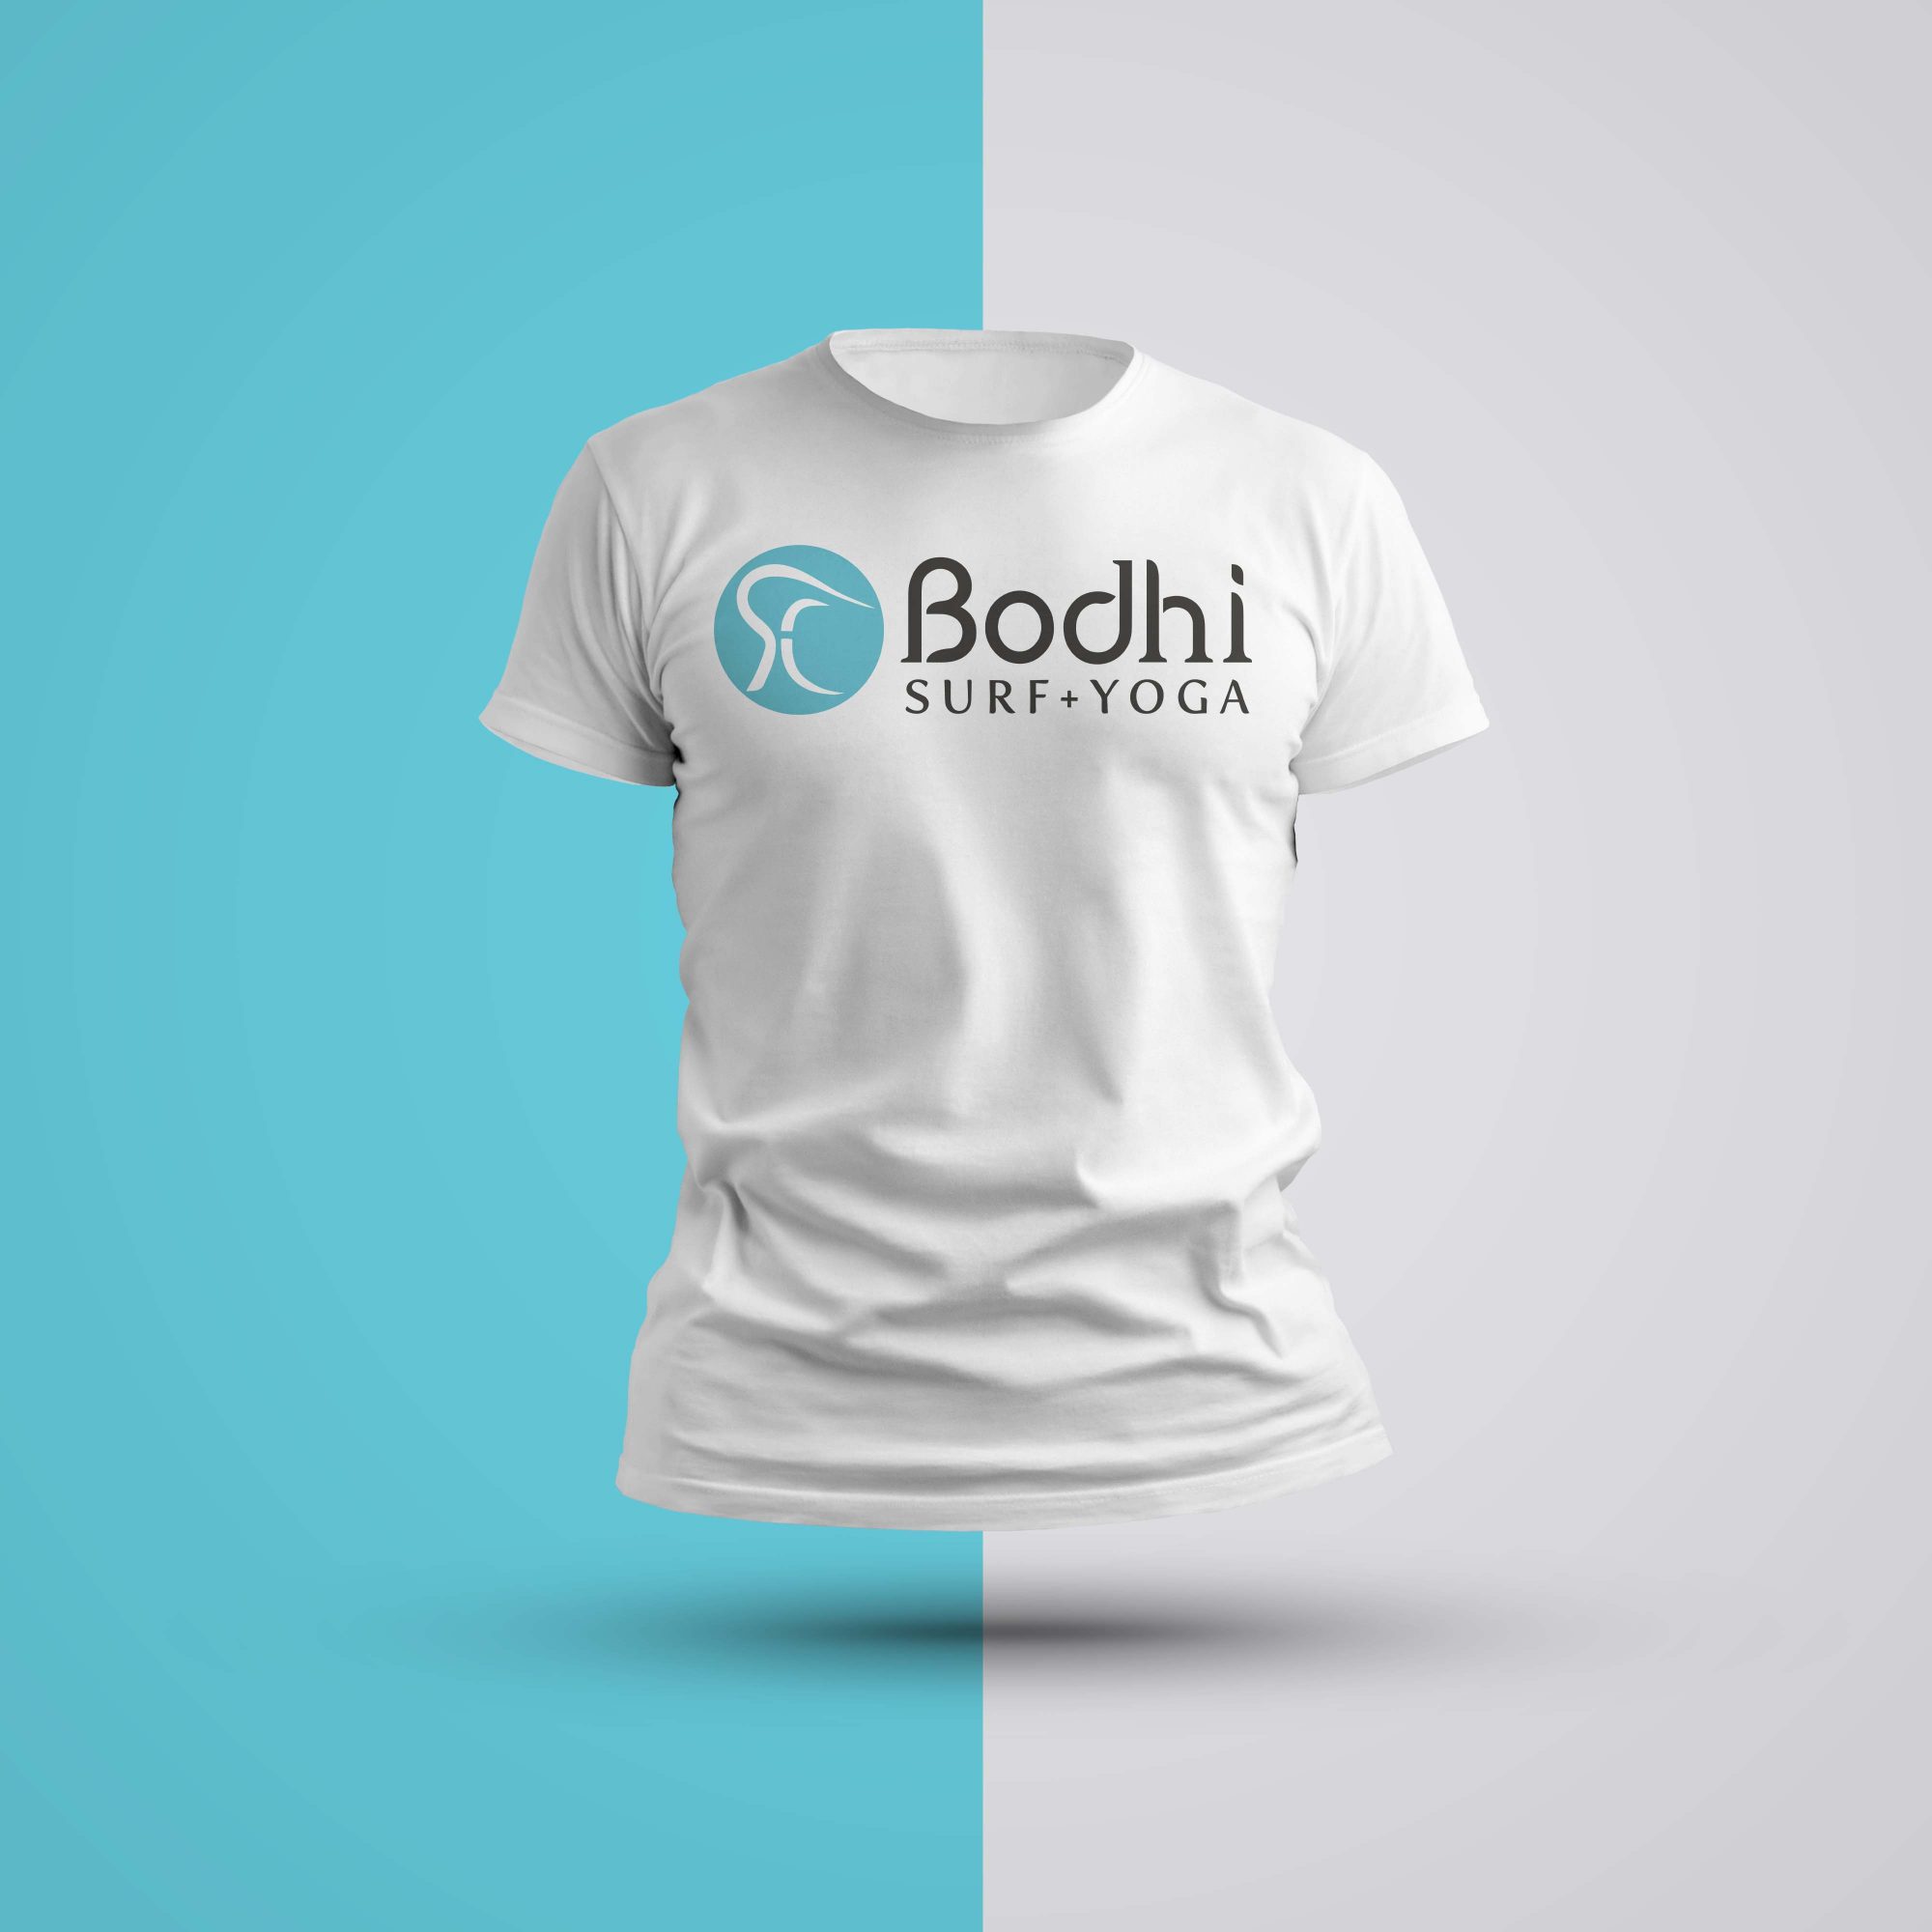 Bodhi Surf+Yoga Tshirt for Men • Bodhi Surf + Yoga